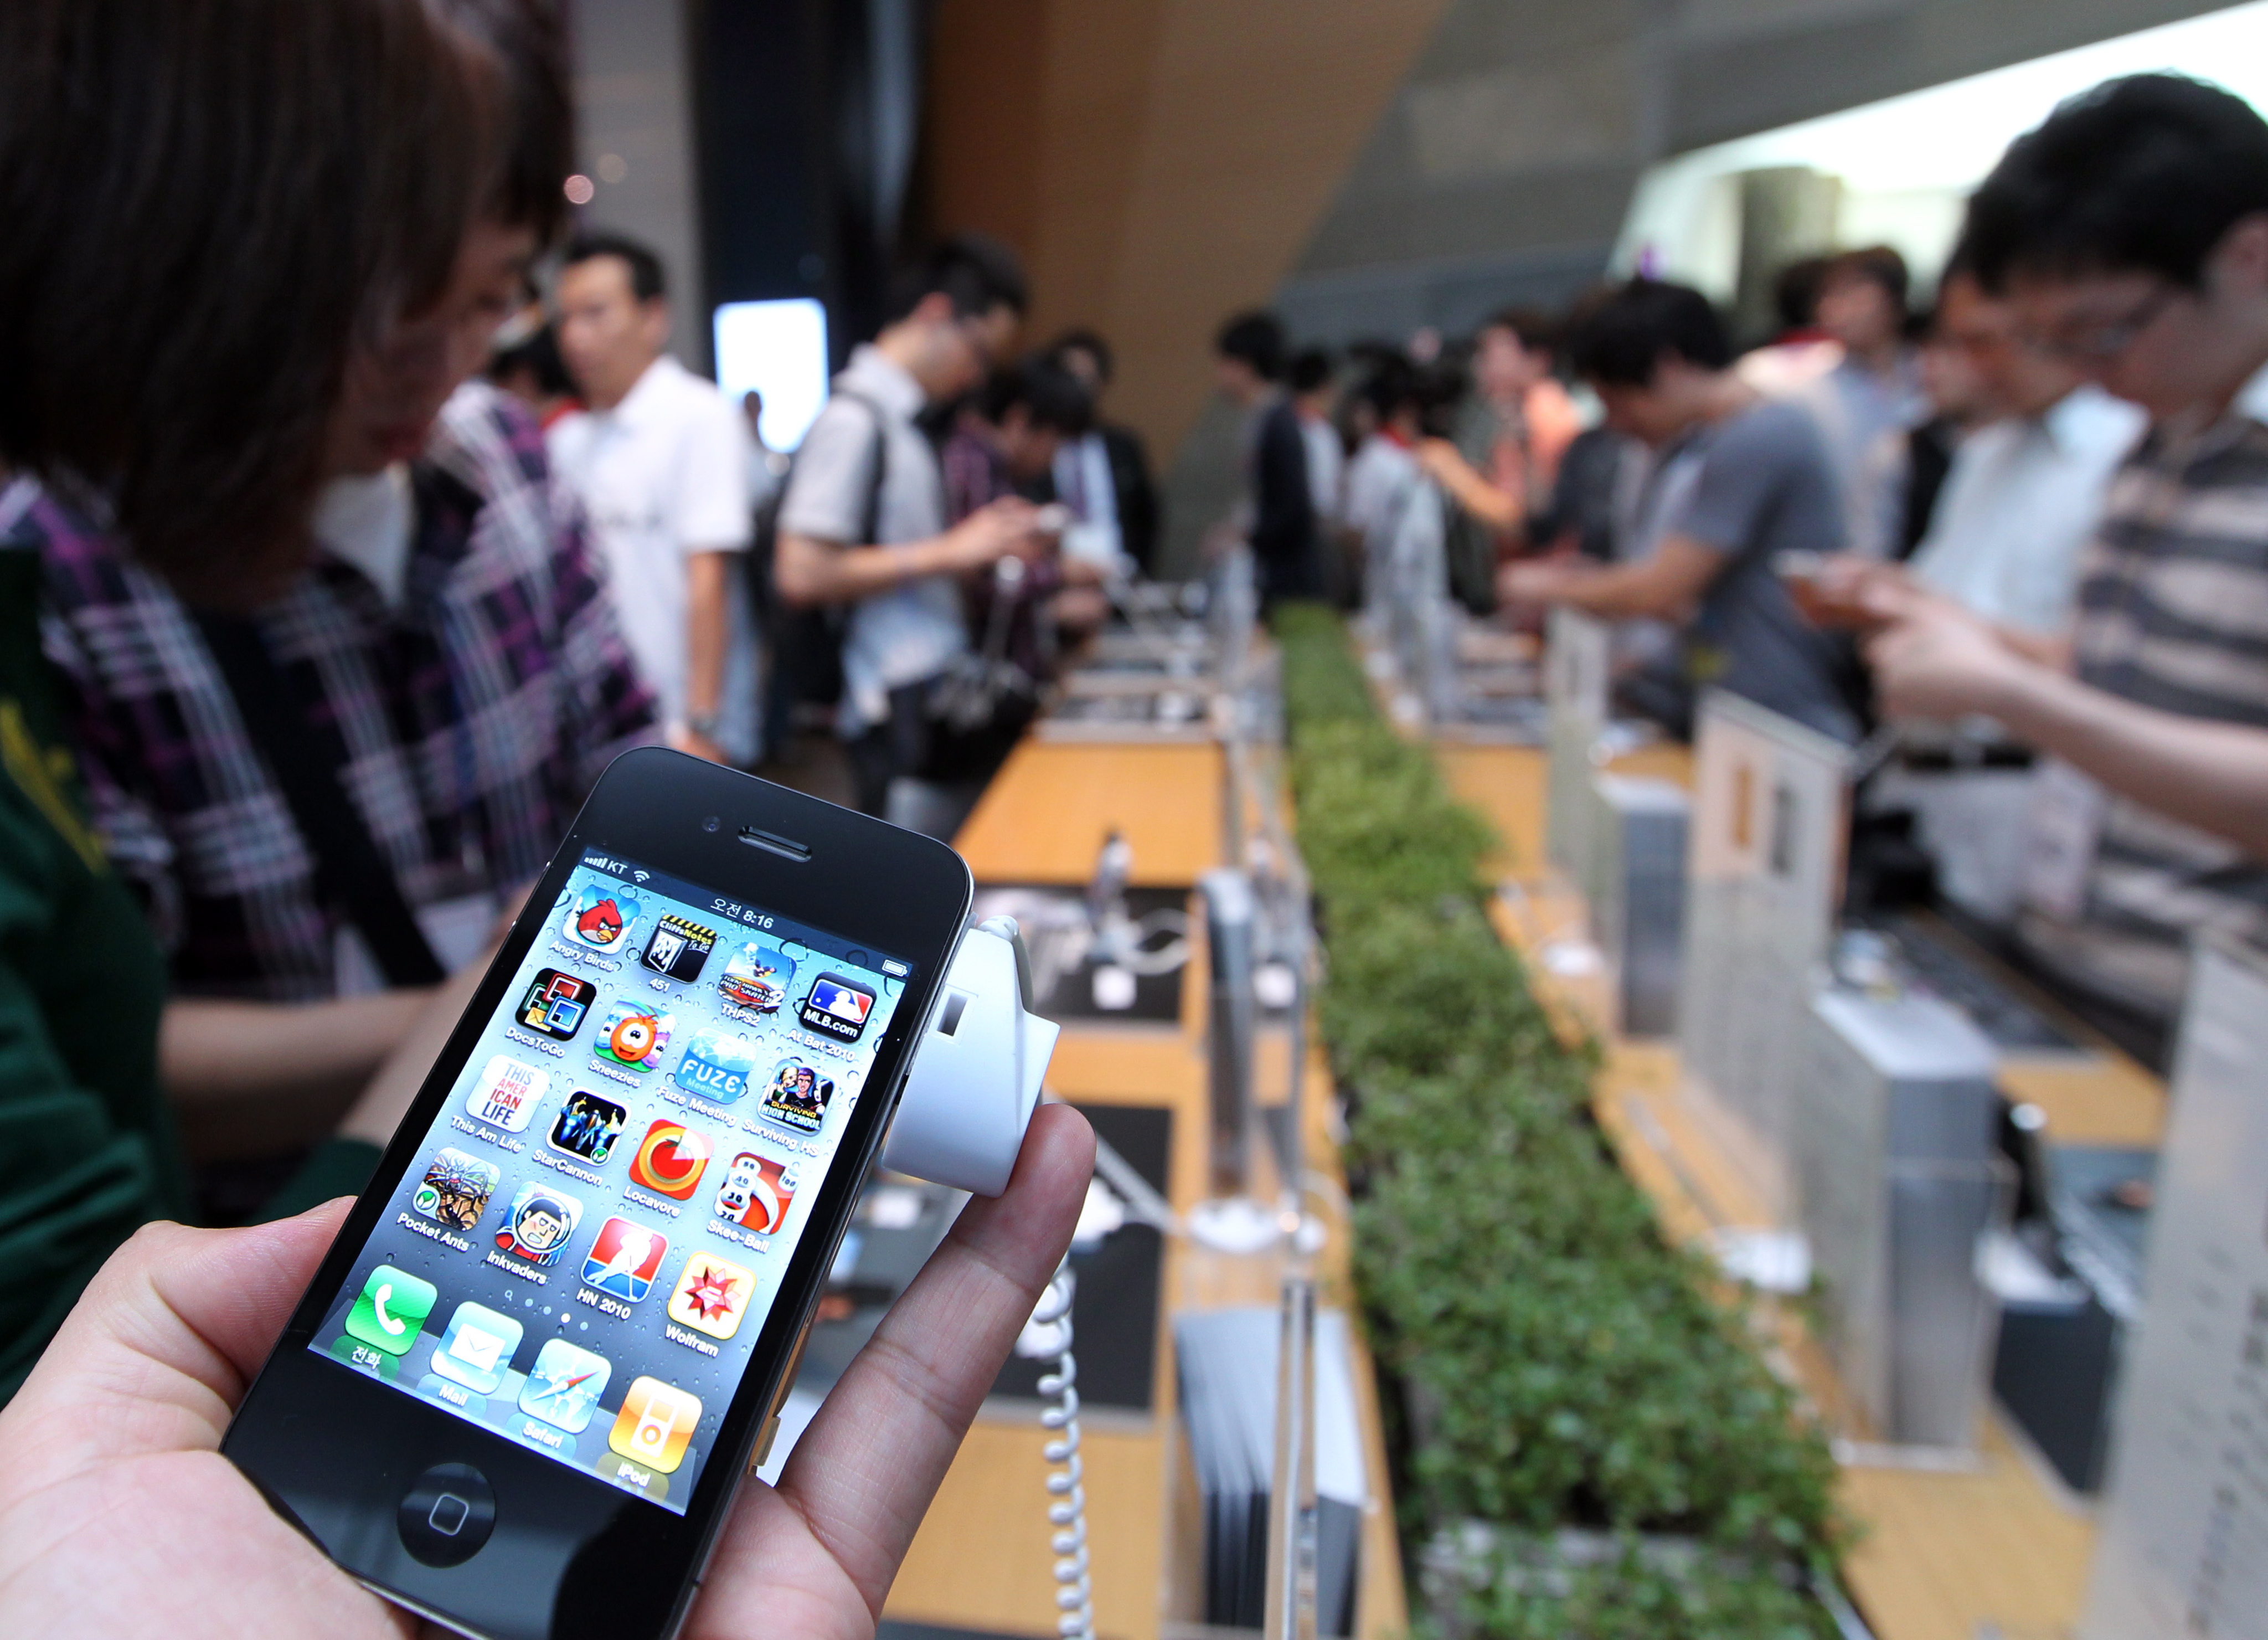 Apple ще разпространява безплатно iPhone 4 с двугодишен договор към мобилен оператор, твърди ”Телеграф”